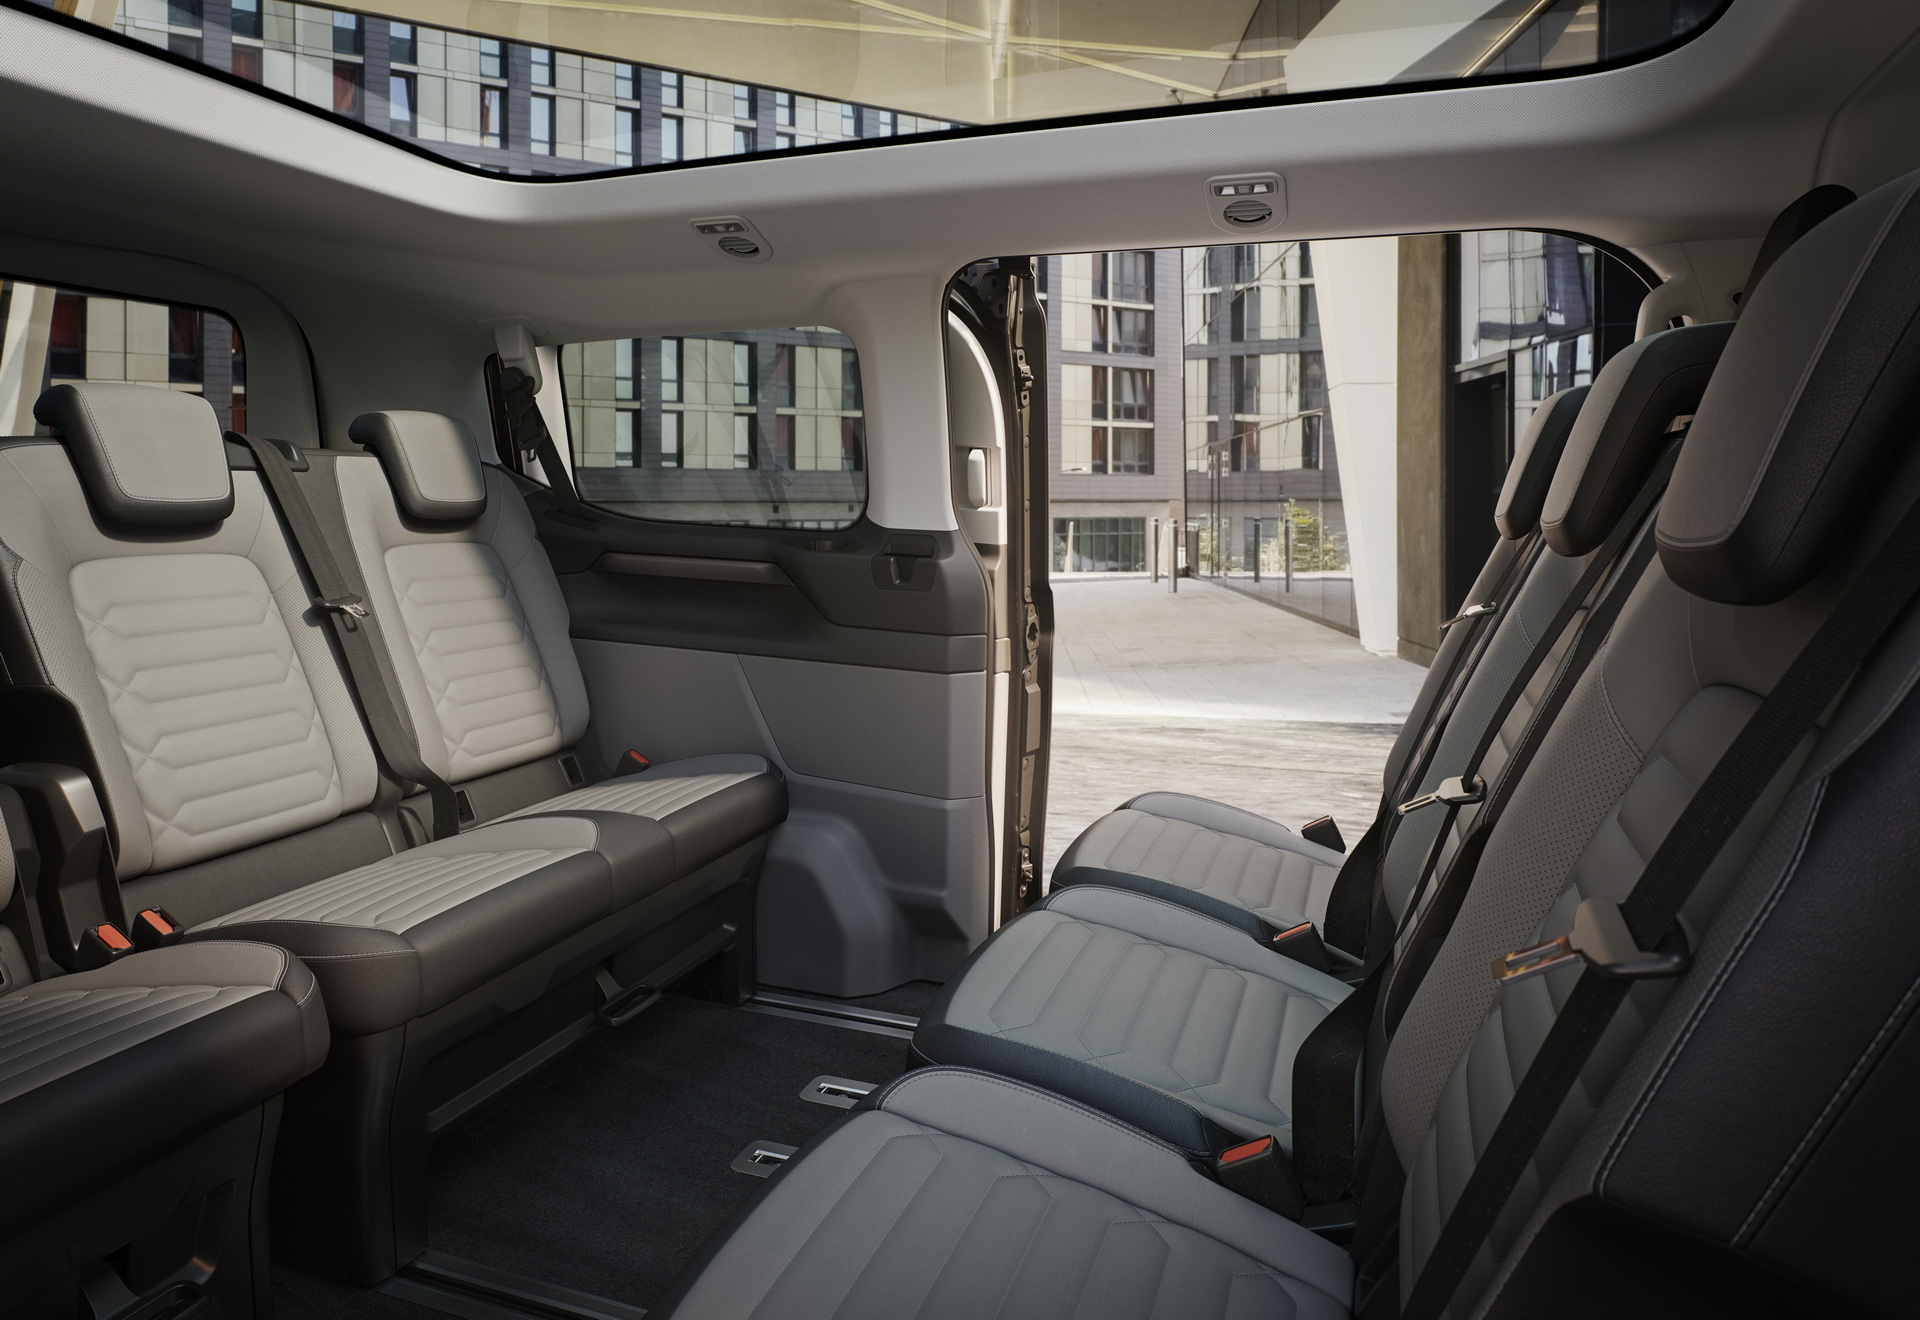 Yeni Ford Tourneo Custom tanıtıldı: İşte tasarımı ve özellikleri